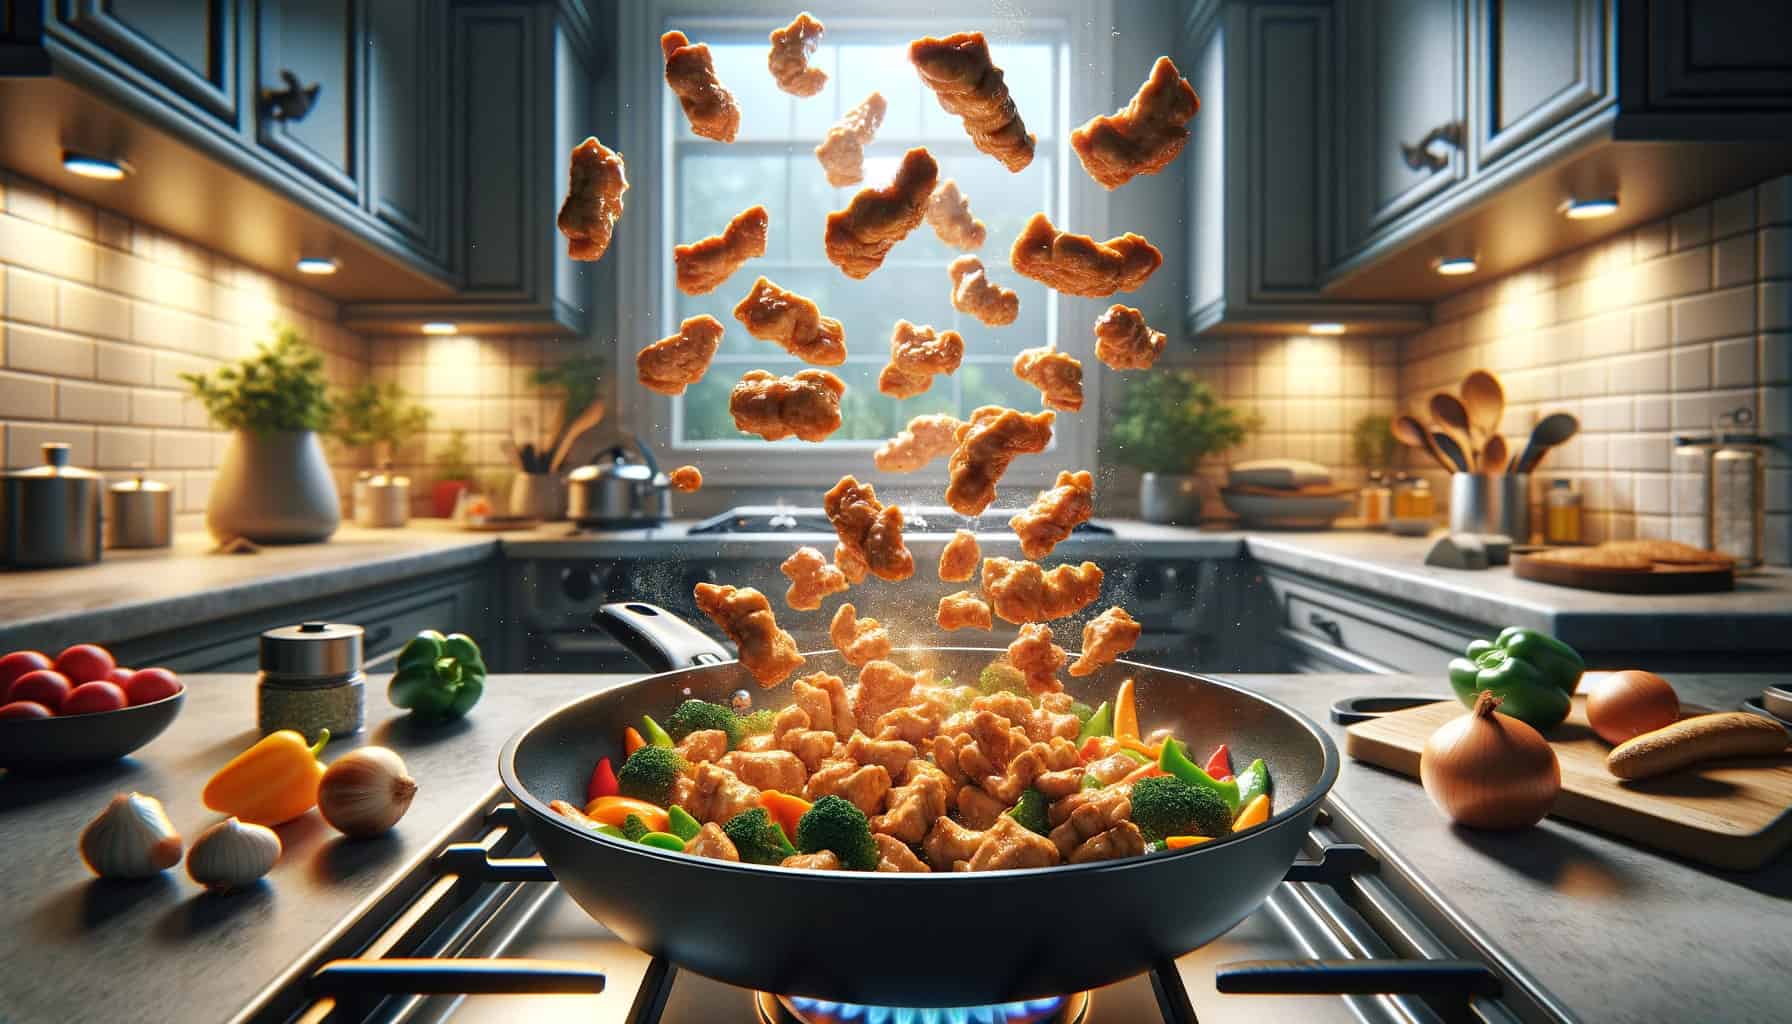 Stir-frying seitan chicken in a kitchen setting